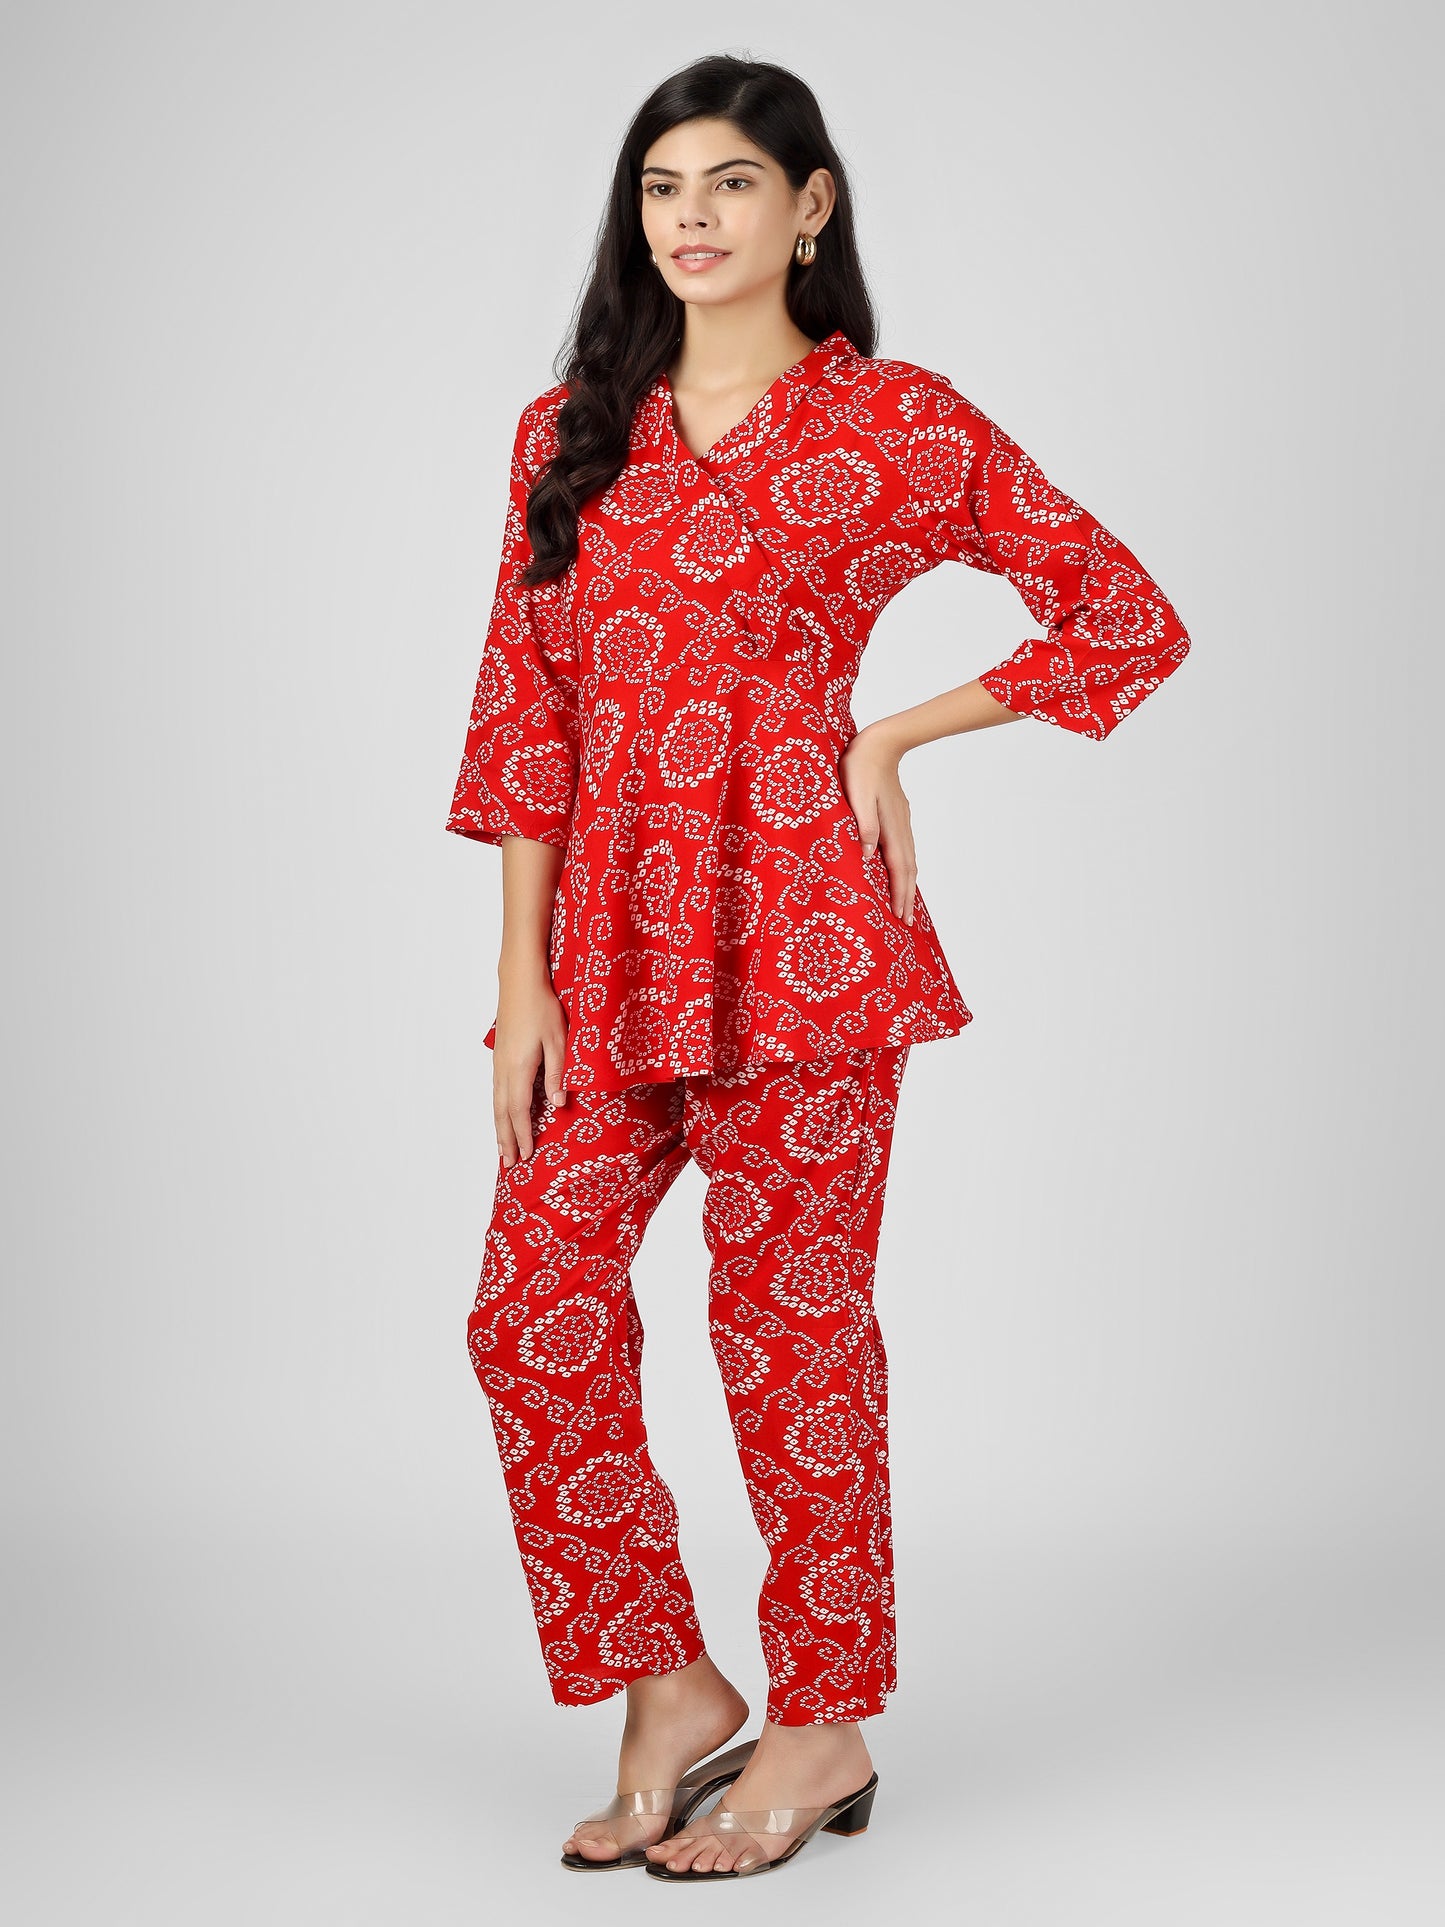 Bandhani Printed Red Angrakha Top and Pant Cord Set